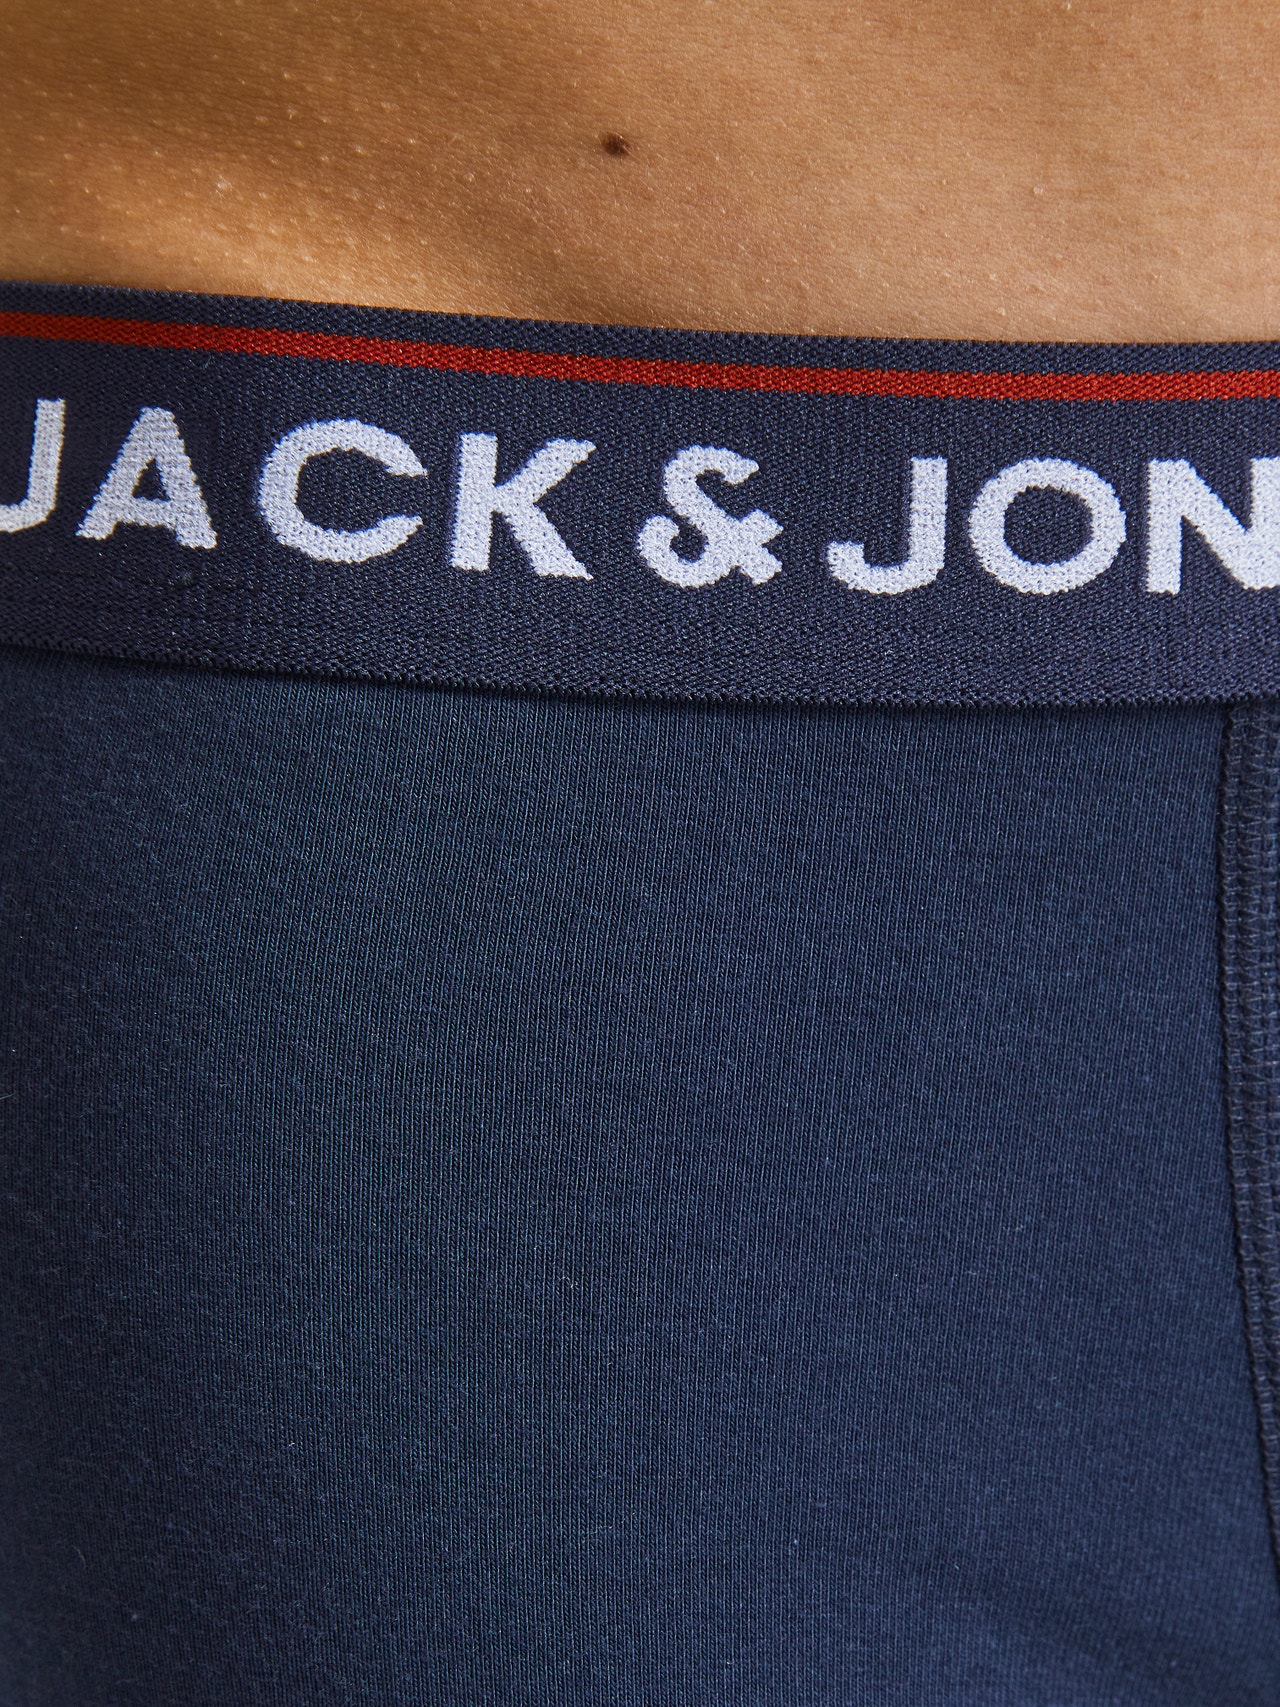 Jack & Jones Paquete de 5 Calções de banho -Navy Blazer - 12217070